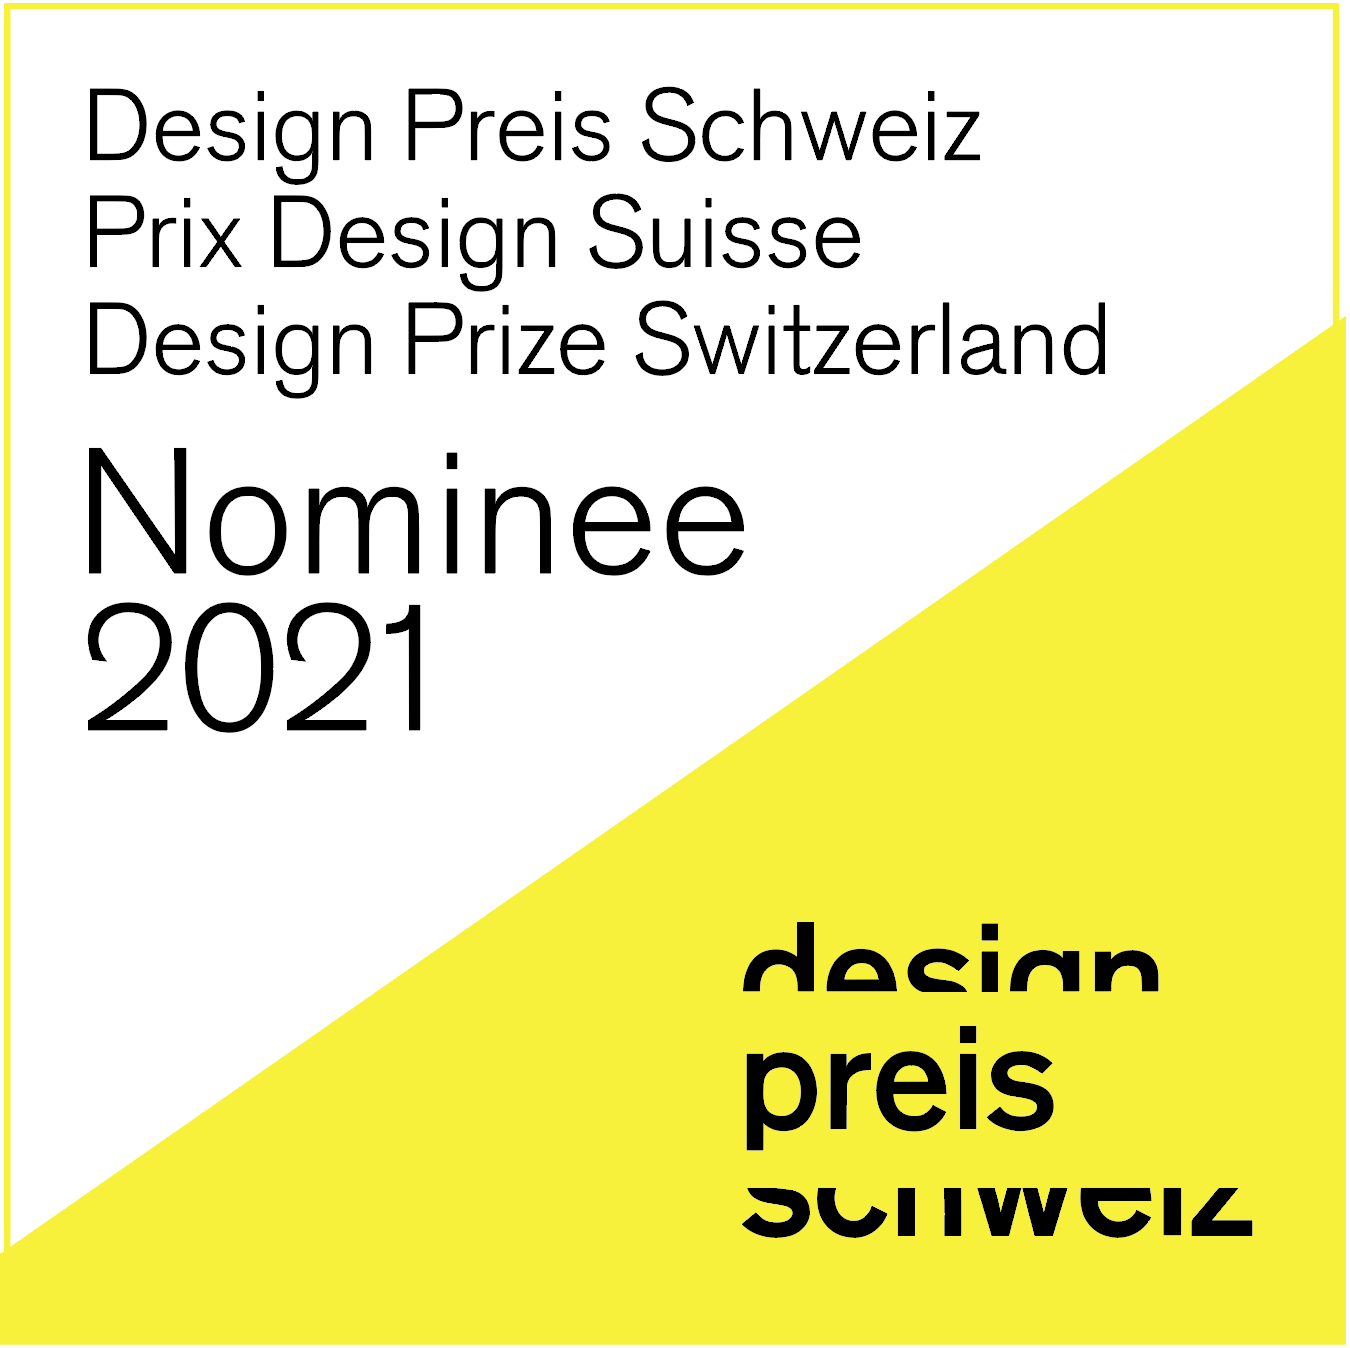 Als nationaler Wettbewerb zeichnet der Design Preis Schweiz seit dreißig Jahren die Schweizer Designbranche aus. Er bietet ein international beachtetes Gütesiegel, das für die Exzellenz der Schweizer Designbranche steht. Wir sind seit...